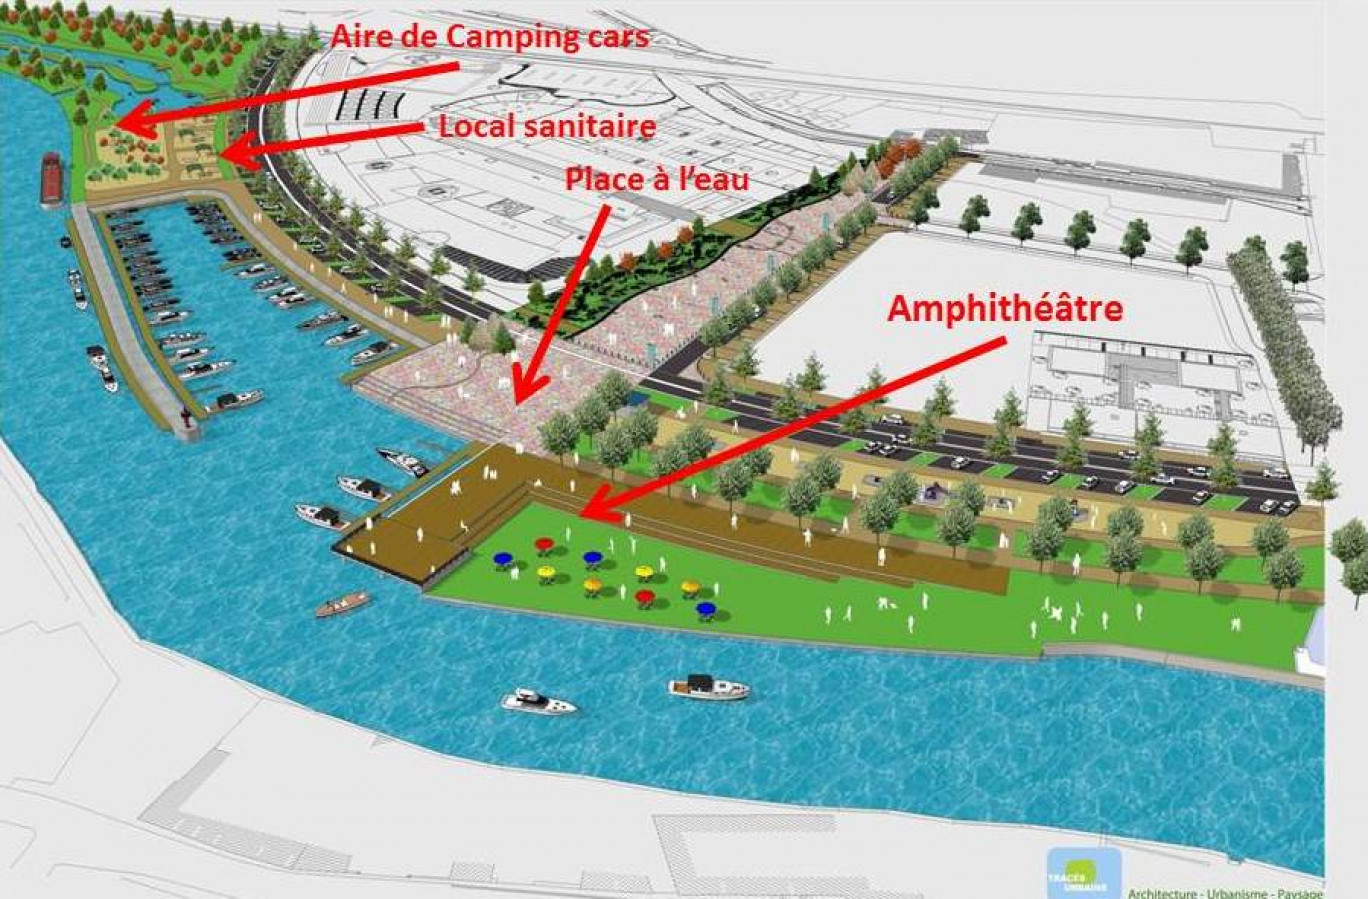 Une vue schématique du futur port sur la Sambre (30.000 m2 de surface aménagée), transmise par la CCSA. Les deux ports doivent être achevés en 2014, c’est l’objectif. De grosses retombées touristiques et économiques sont attendues.